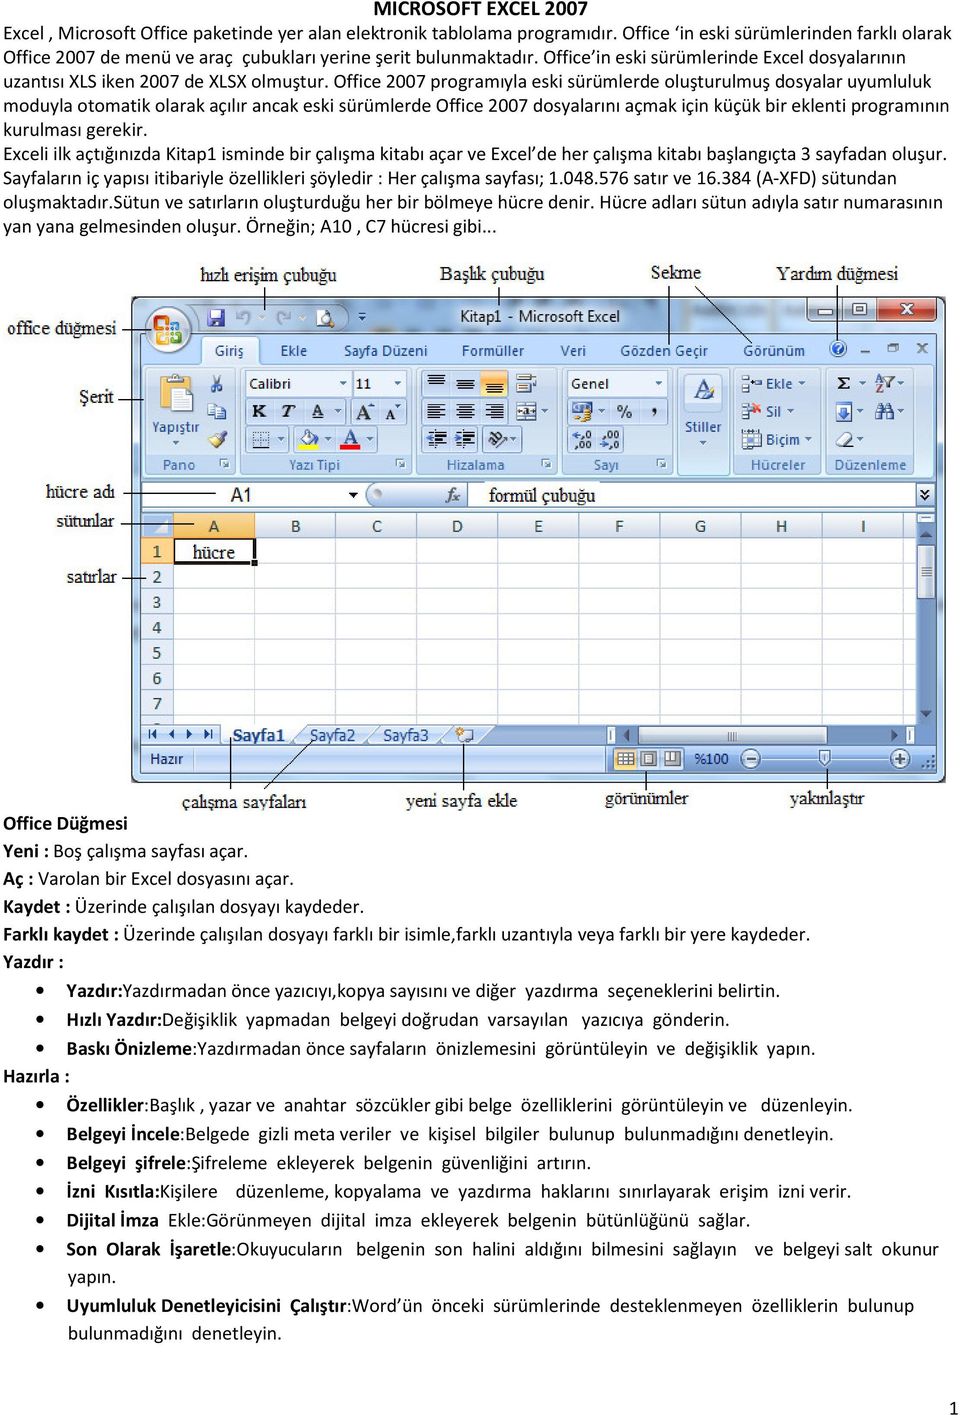 Office 2007 programıyla eski sürümlerde oluşturulmuş dosyalar uyumluluk moduyla otomatik olarak açılır ancak eski sürümlerde Office 2007 dosyalarını açmak için küçük bir eklenti programının kurulması